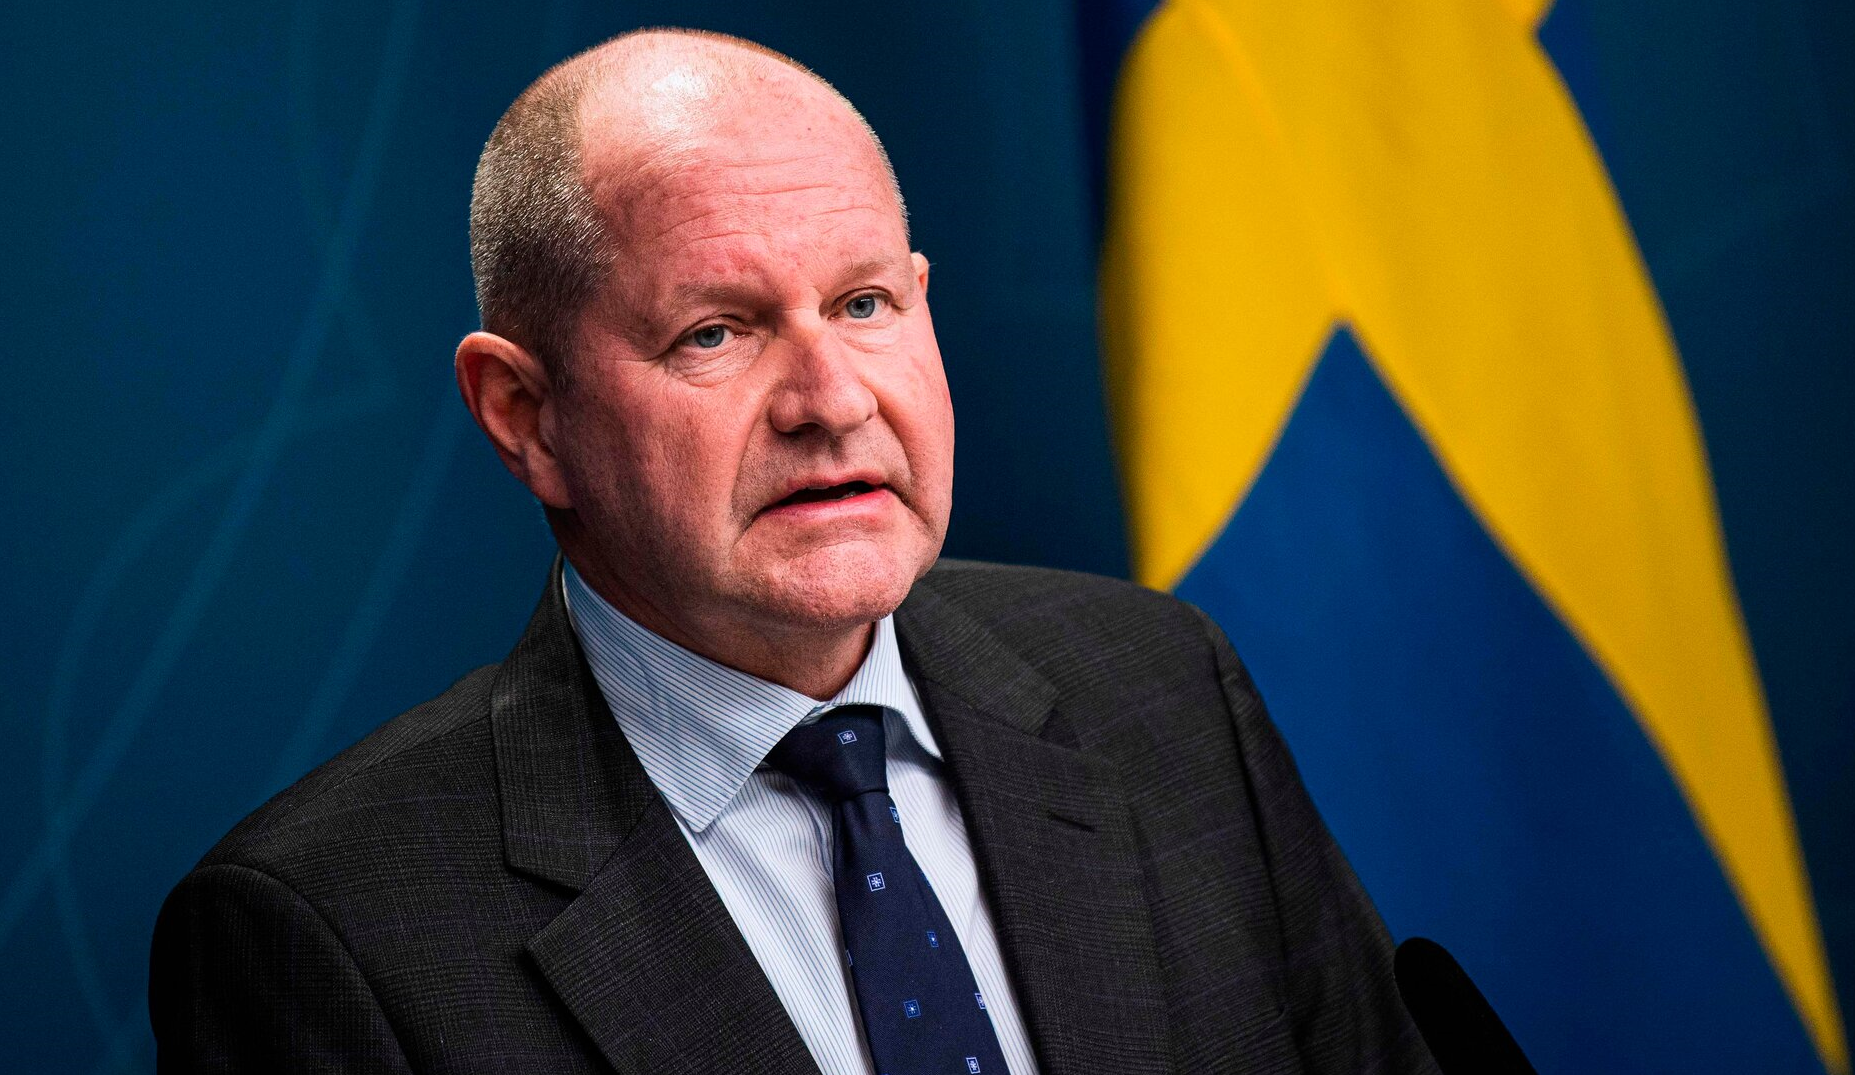 Oficialii suedezi încalcă propriile recomandări anti-Covid. Vacanțele în Canare și sesiunile de shopping au distrus încrederea cetățenilor